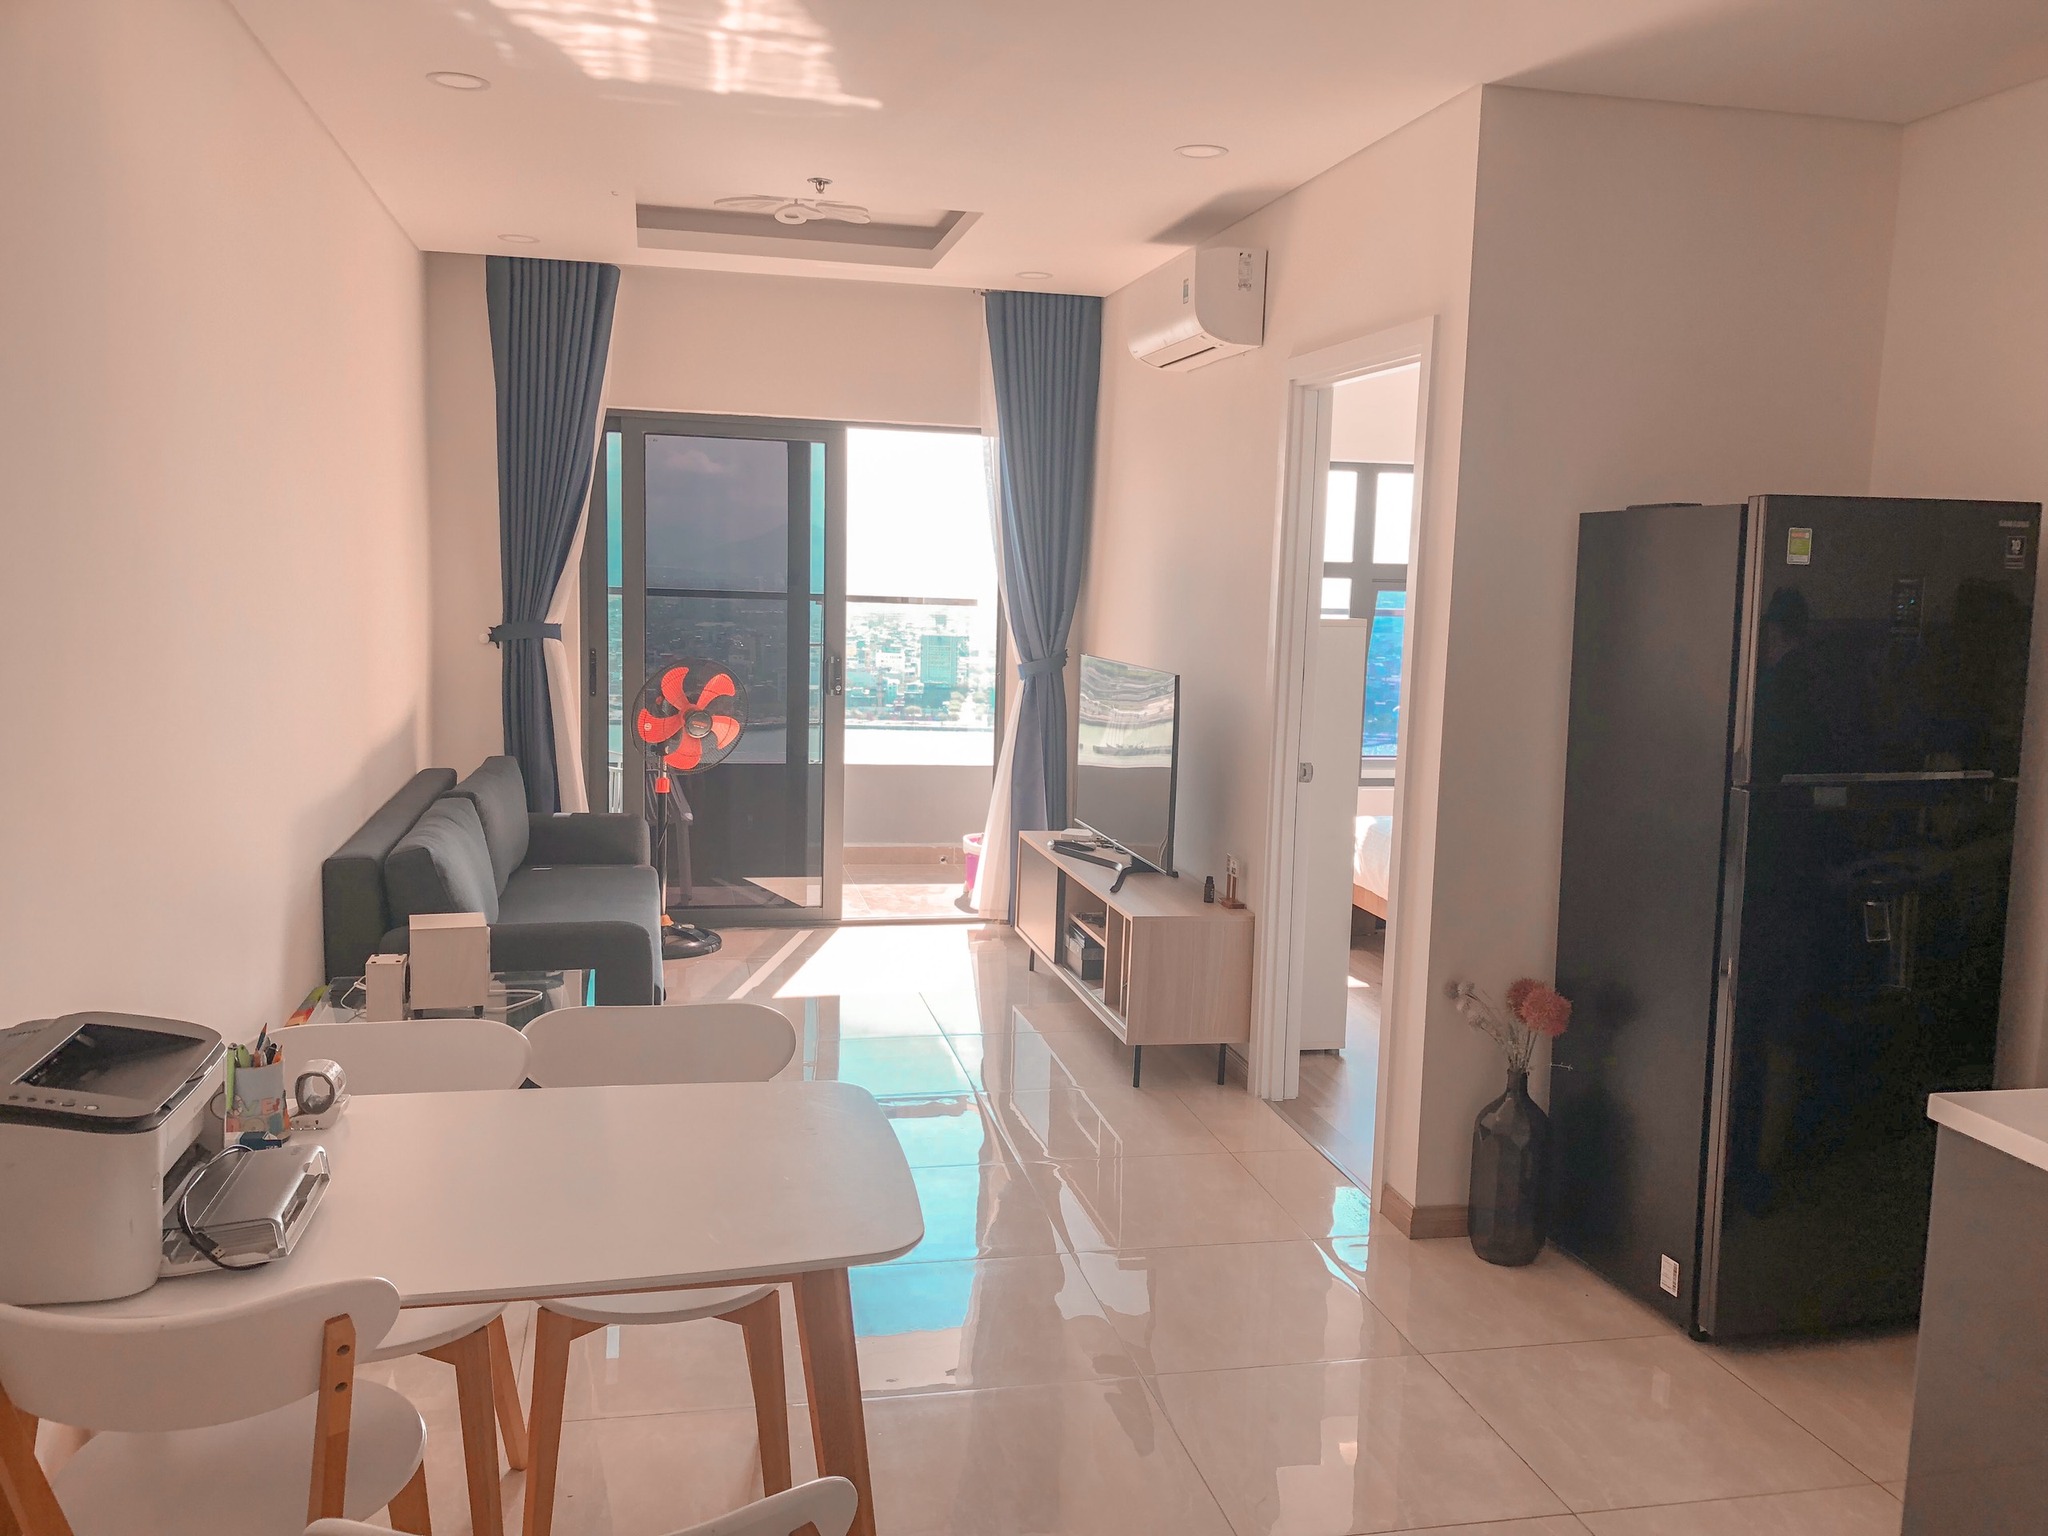 Giá sốc cho căn hộ đầy đủ tiện nghi tại Đà nẵng